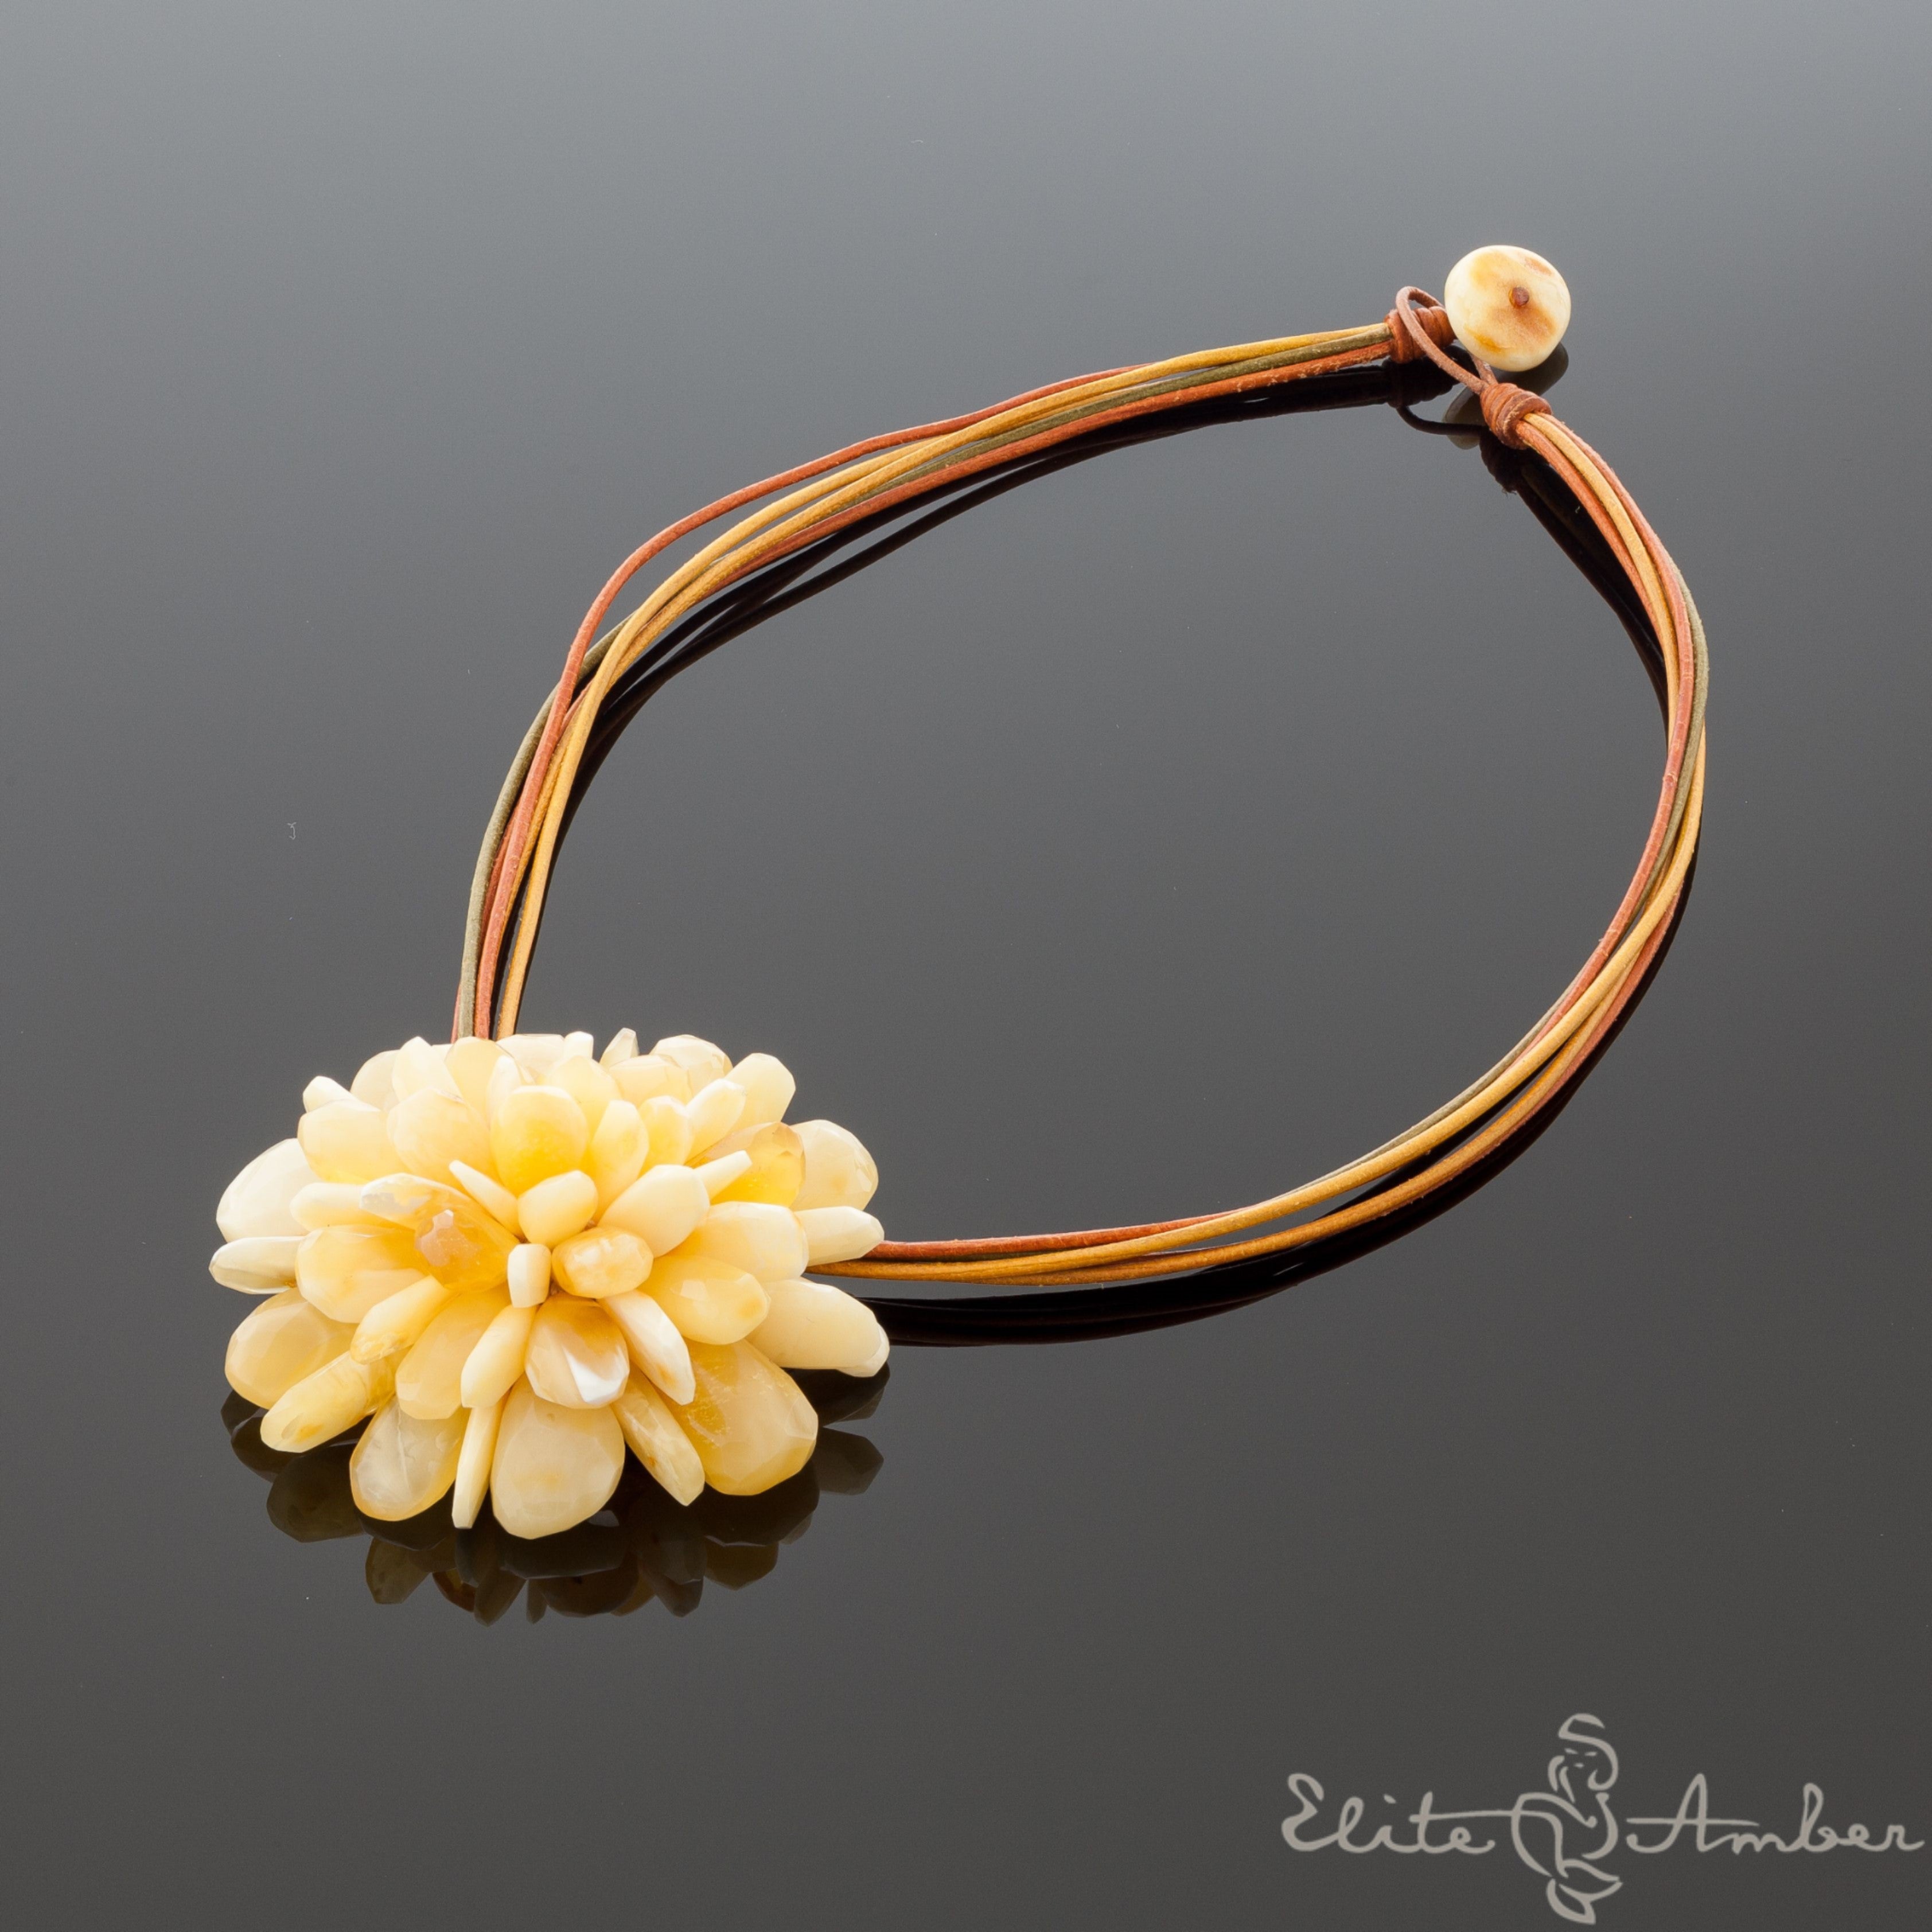 Amber brooch-pendant "Royal white flower"